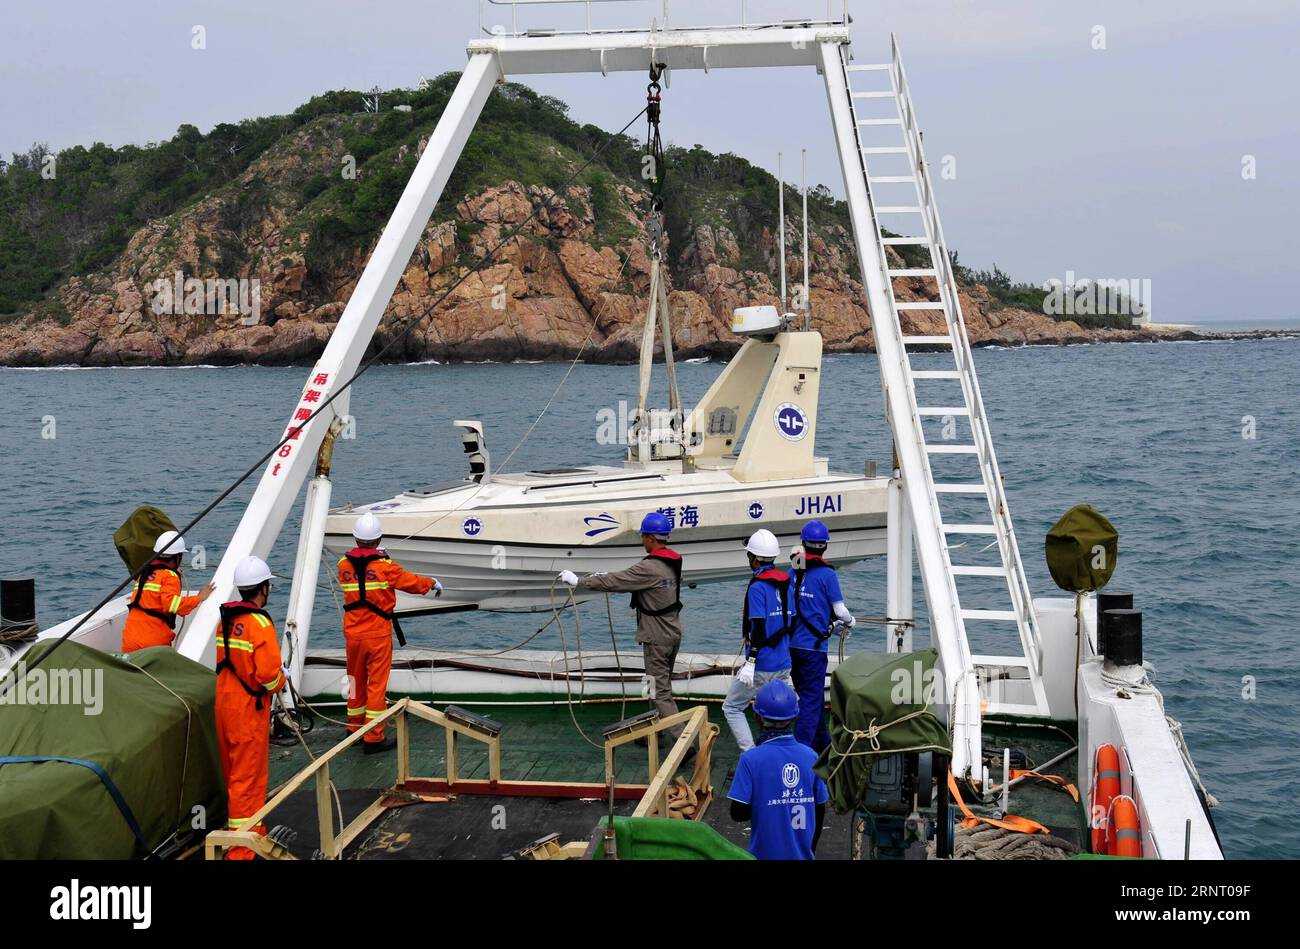 (171023) -- SHANGHAI, 23. Oktober 2017 -- Surveyors transportieren unbemanntes Boot Jinghai Nr. 3 in Wasser in Sanya, Südchinesische Provinz Hainan, 23. Oktober 2017. China hat zwei unbemannte Boote entsandt, um an einer geologischen Untersuchung entlang seiner 18.000 km langen Küste teilzunehmen, insbesondere in den wichtigsten Küstengebieten. Guangzhou Marine Geological Survey hat zwei unbemannte Boote eingeführt, die von der Universität Shanghai entwickelt wurden, um Daten zu sammeln und Videos zu machen, die früher von Vermessern gemacht wurden. ) (Zkr) CHINA-SANYA-GEOLOGICAL SURVEY(CN) ZhangxJiansong PUBLICATIONxNOTxINxCHN Stockfoto